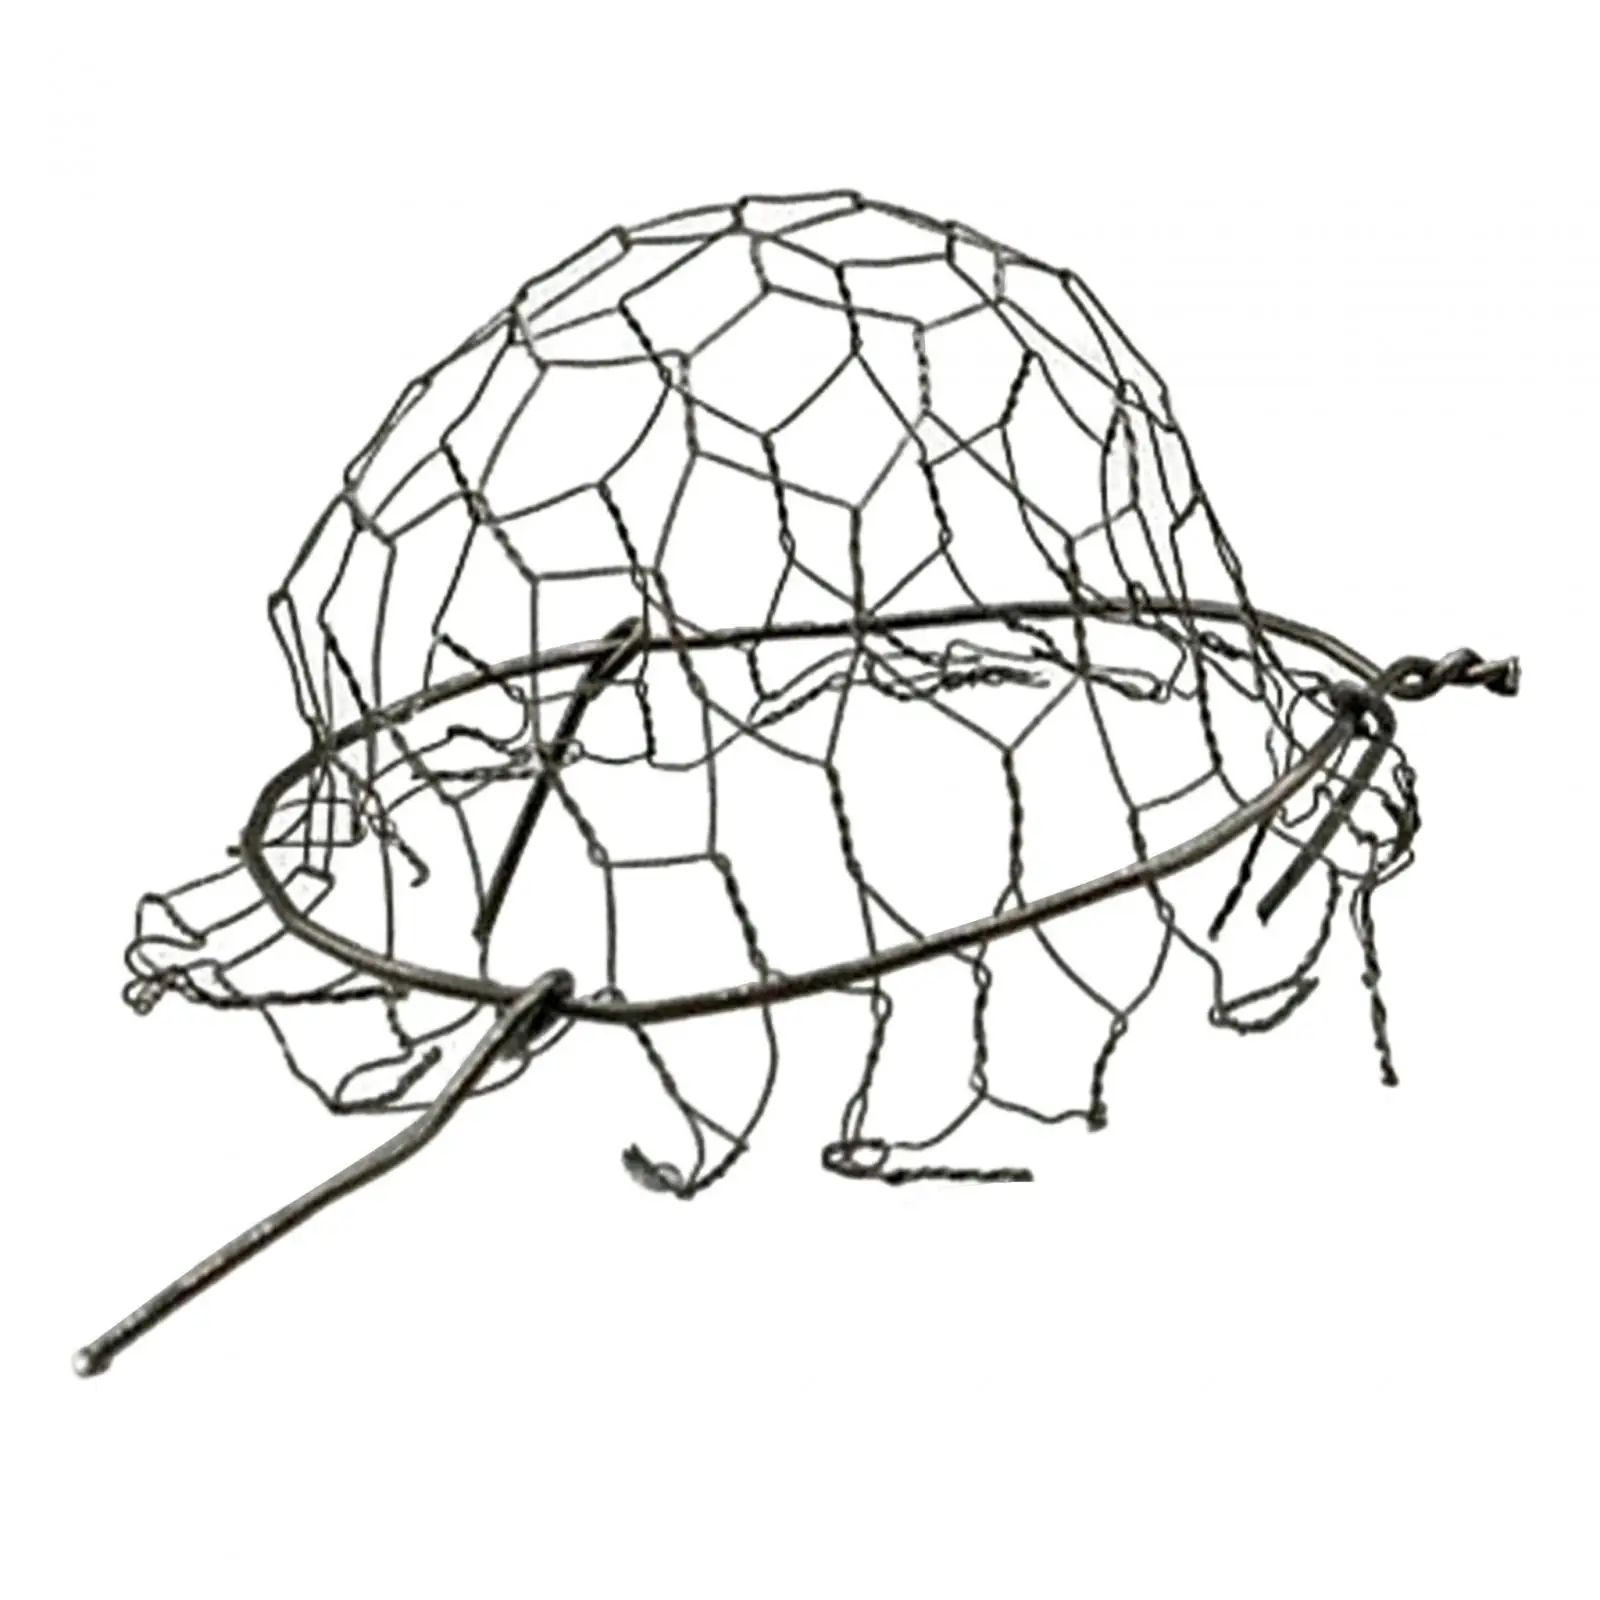 

1/6 проволочная сетка для шляп, прочная, легко надевать/снимать, для солдат, для активного отдыха